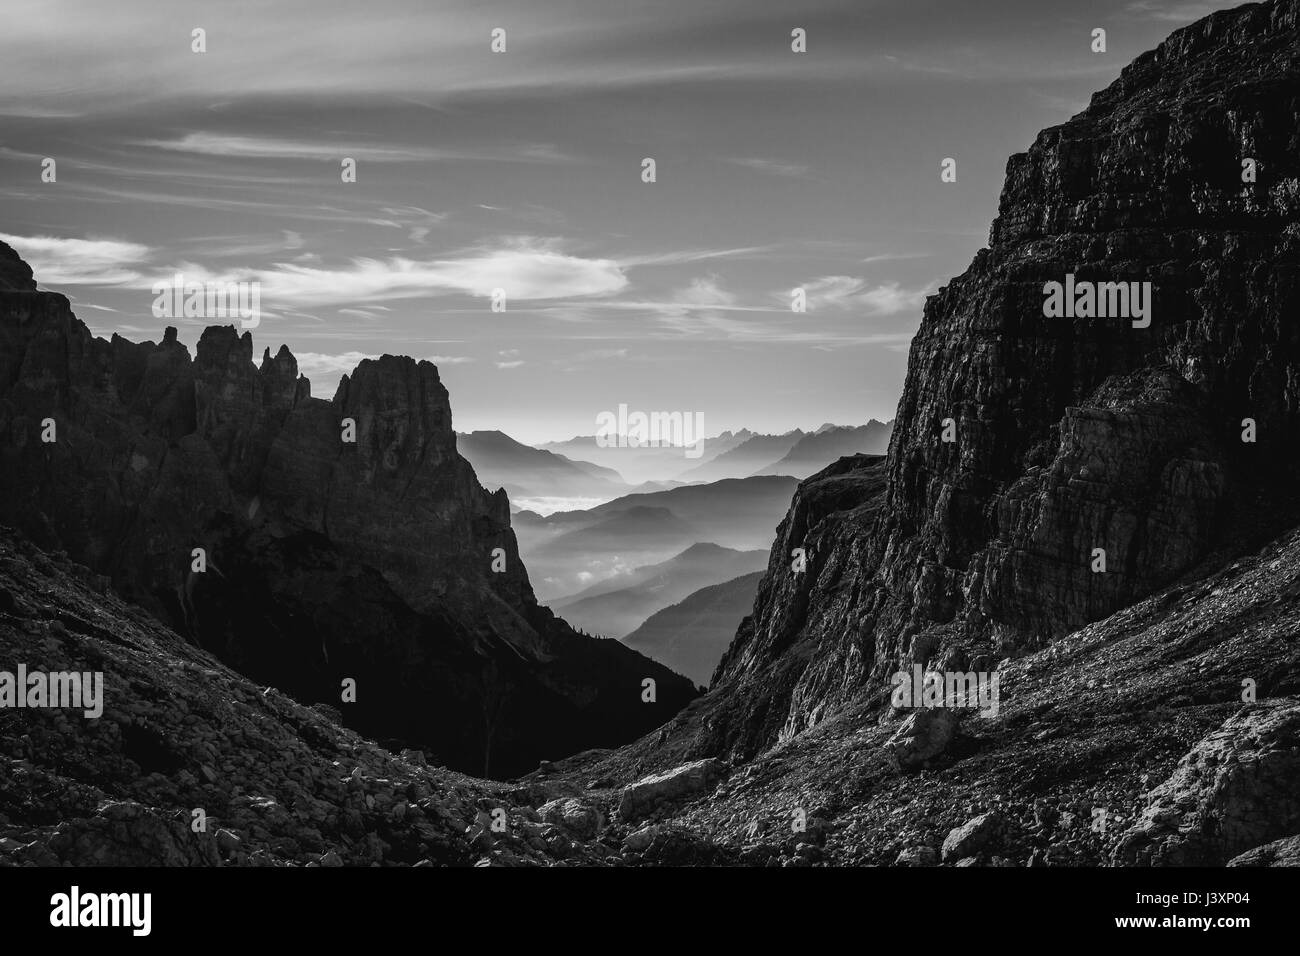 Schwarz / weiß Landschaftsansicht der dunstigen sanften Bergen und Hügeln in den italienischen Dolomiten bei Sonnenaufgang. Querformat Stockfoto